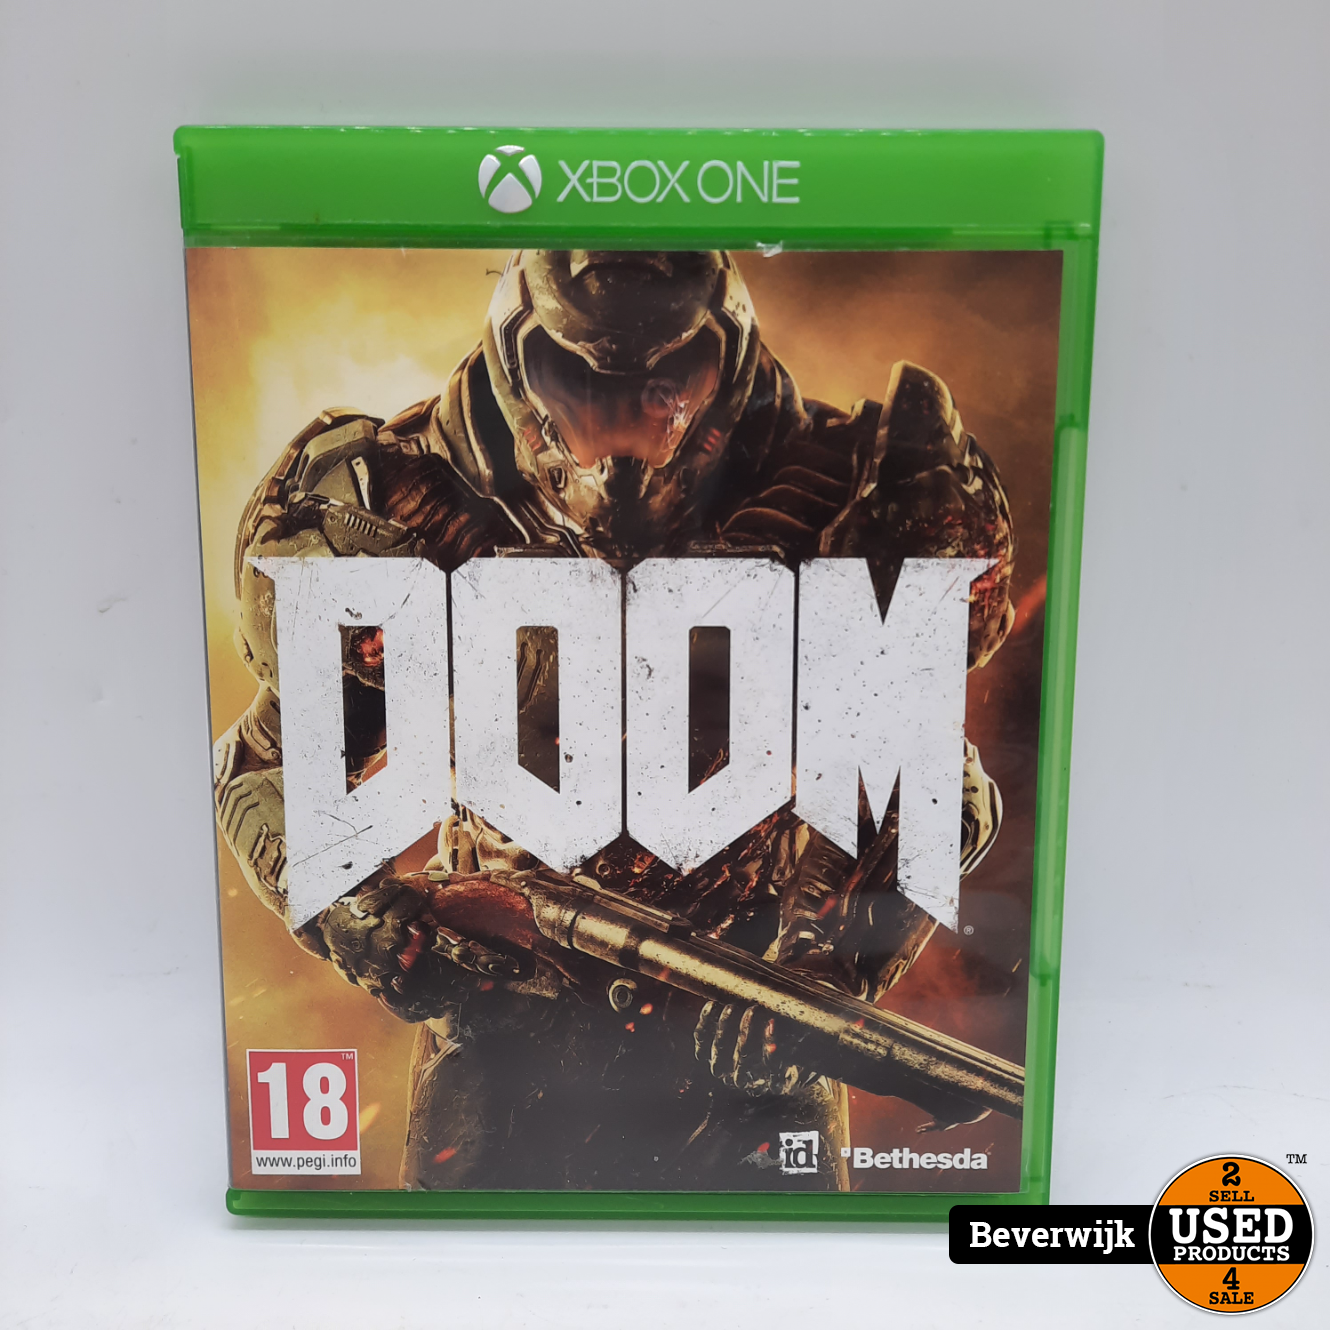 Helder op Editie hoofdonderwijzer Microsoft Doom - Xbox One Game - Used Products Beverwijk